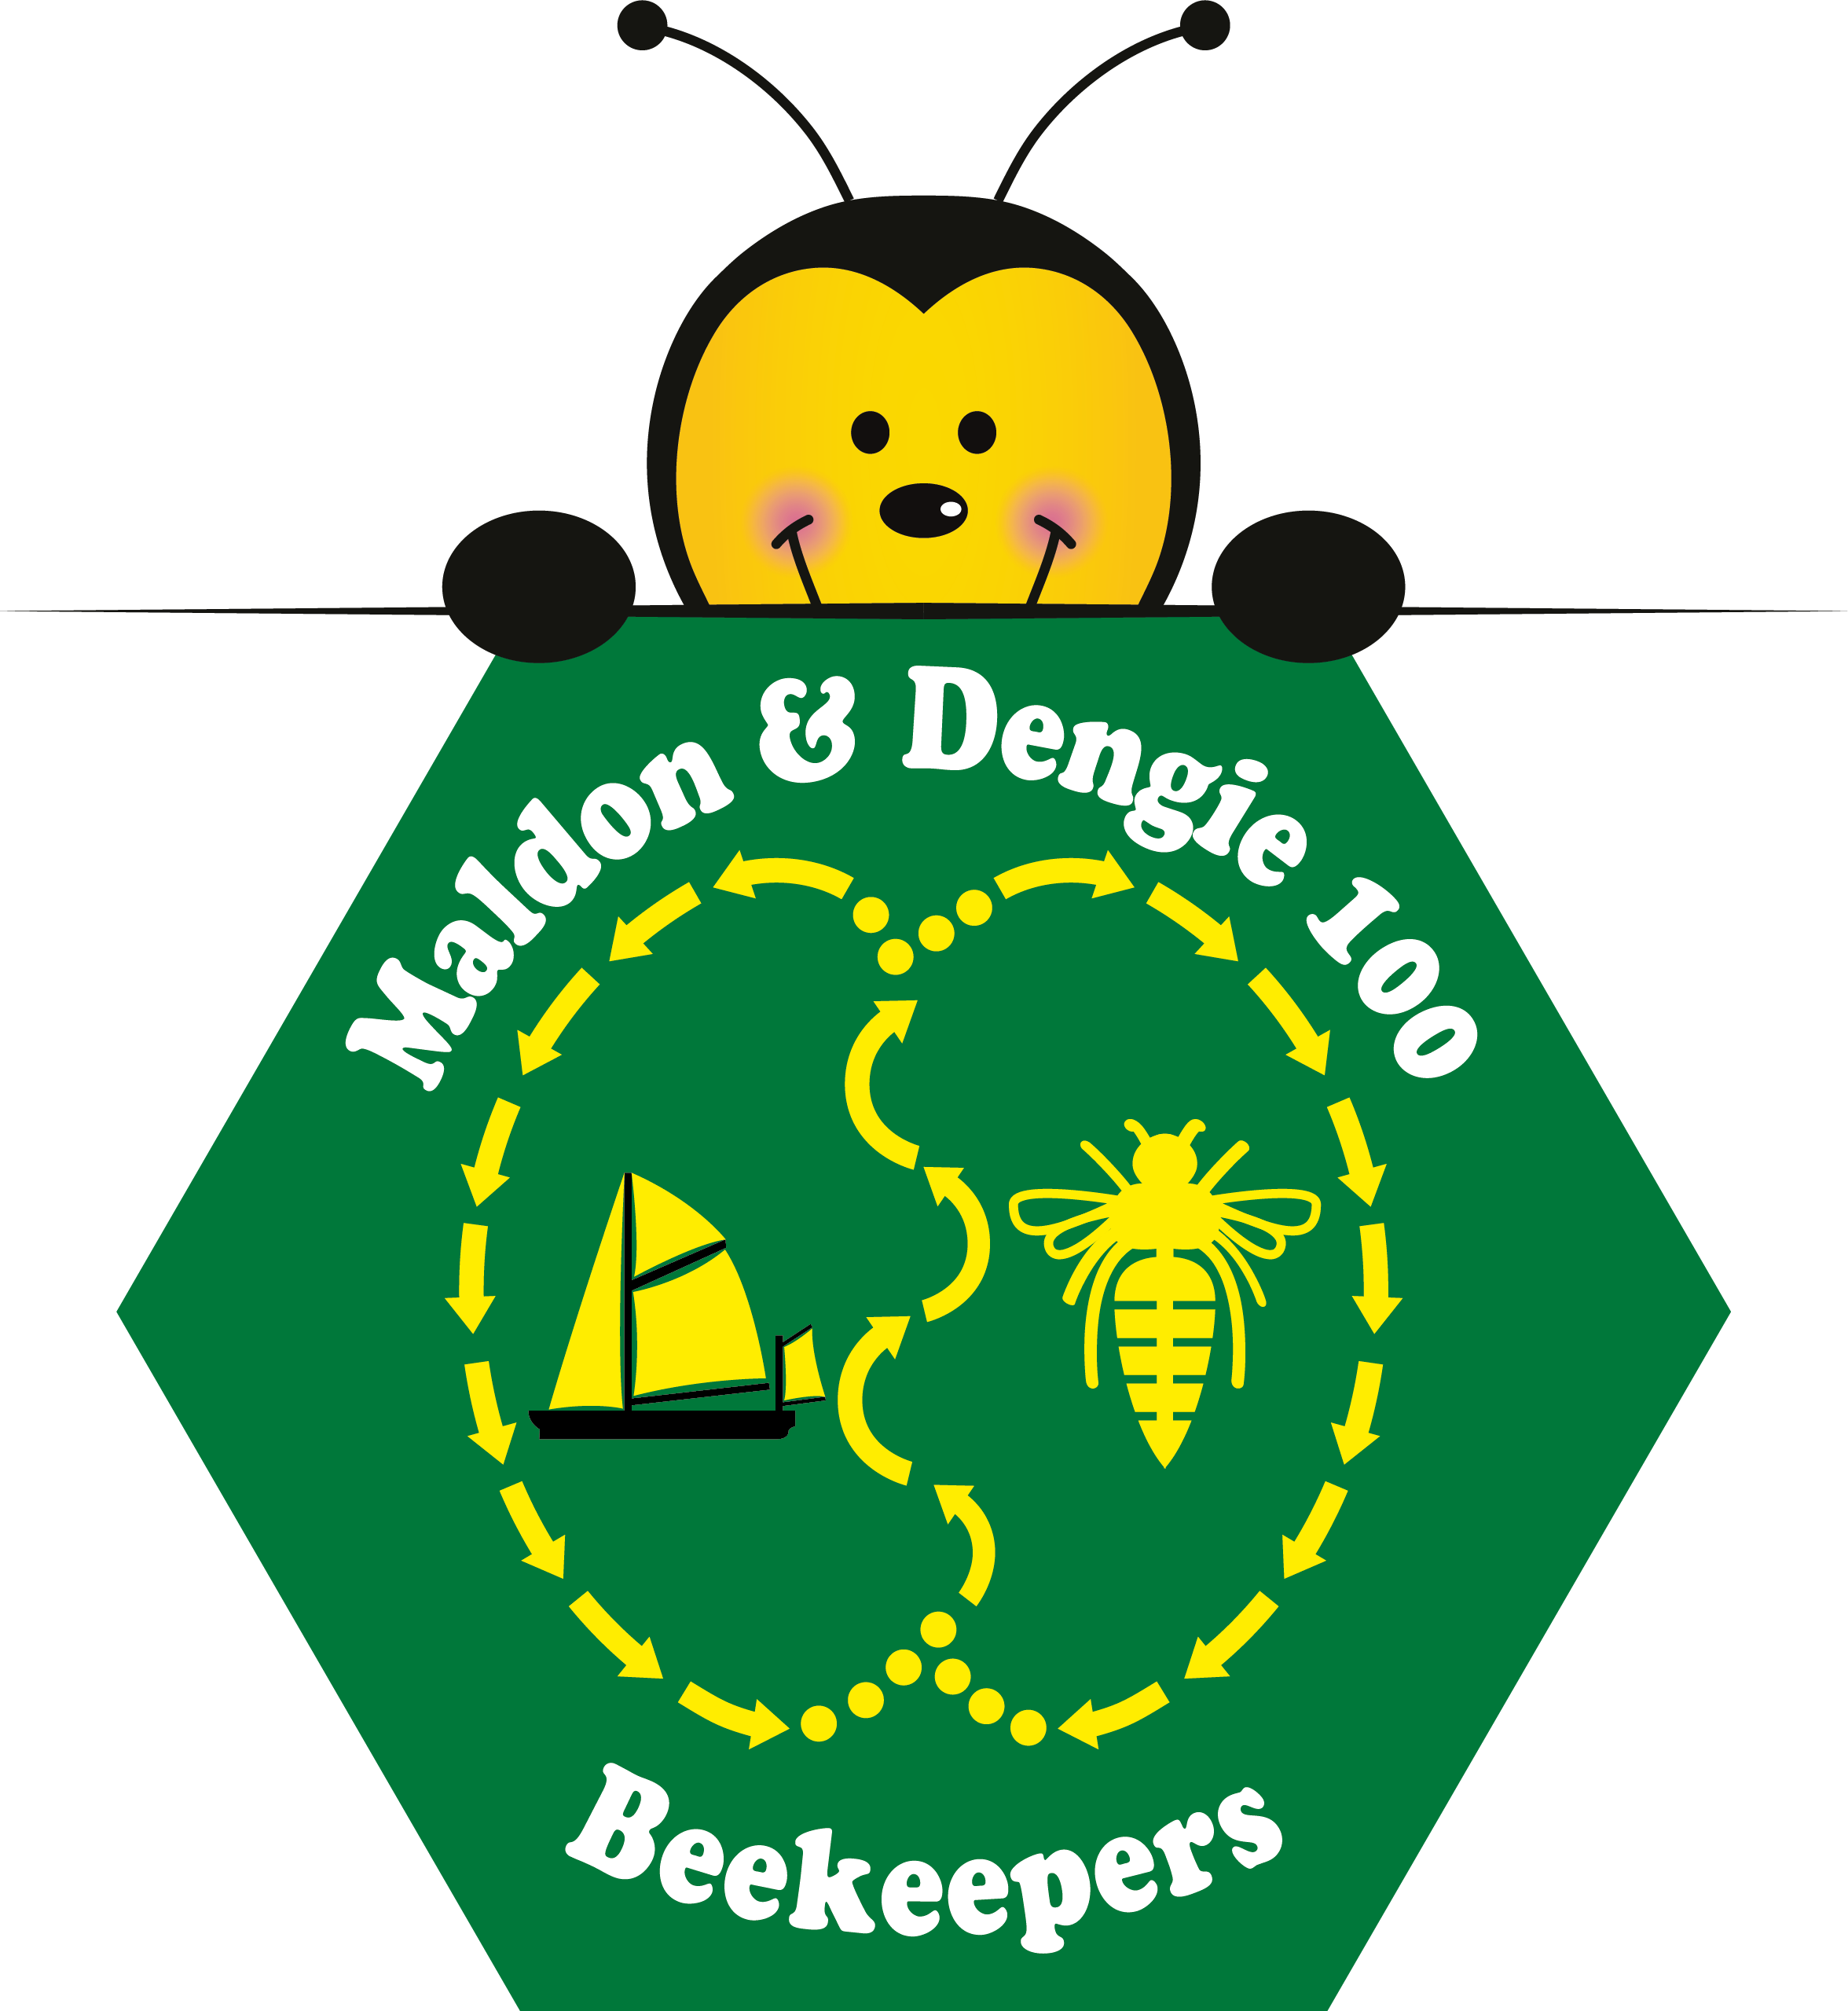 Maldon & Dengie 100 Beekeepers